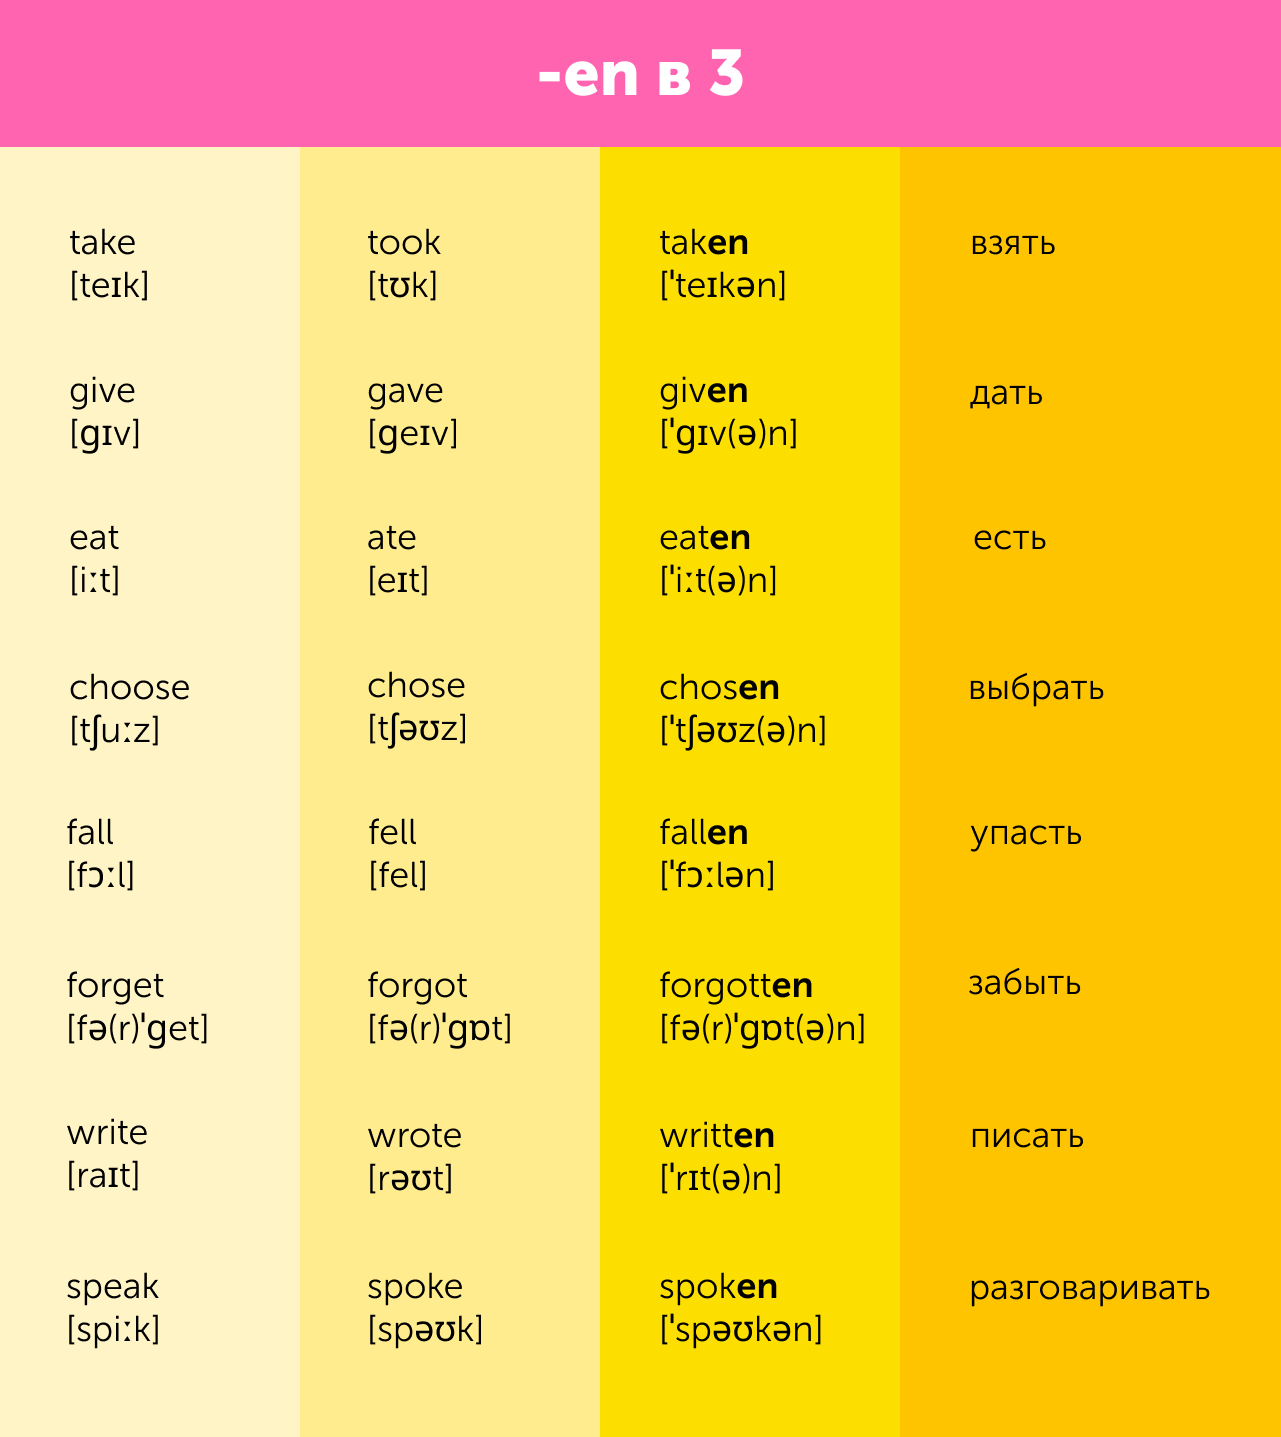 Неправильные глаголы в английском. Таблица с переводом